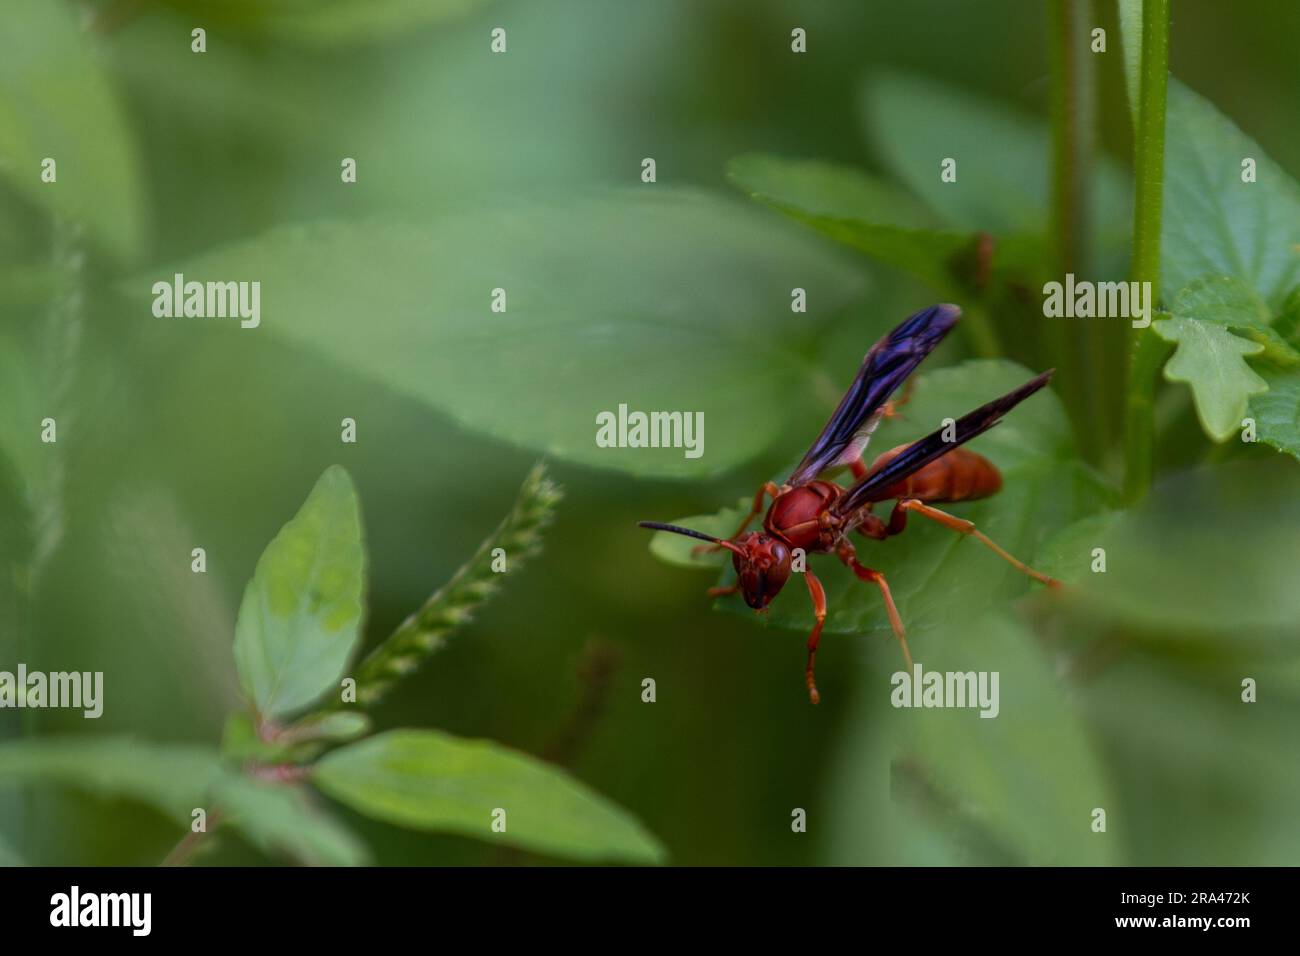 Nahaufnahme einer roten Wespe auf einem grünen Blatt Stockfoto